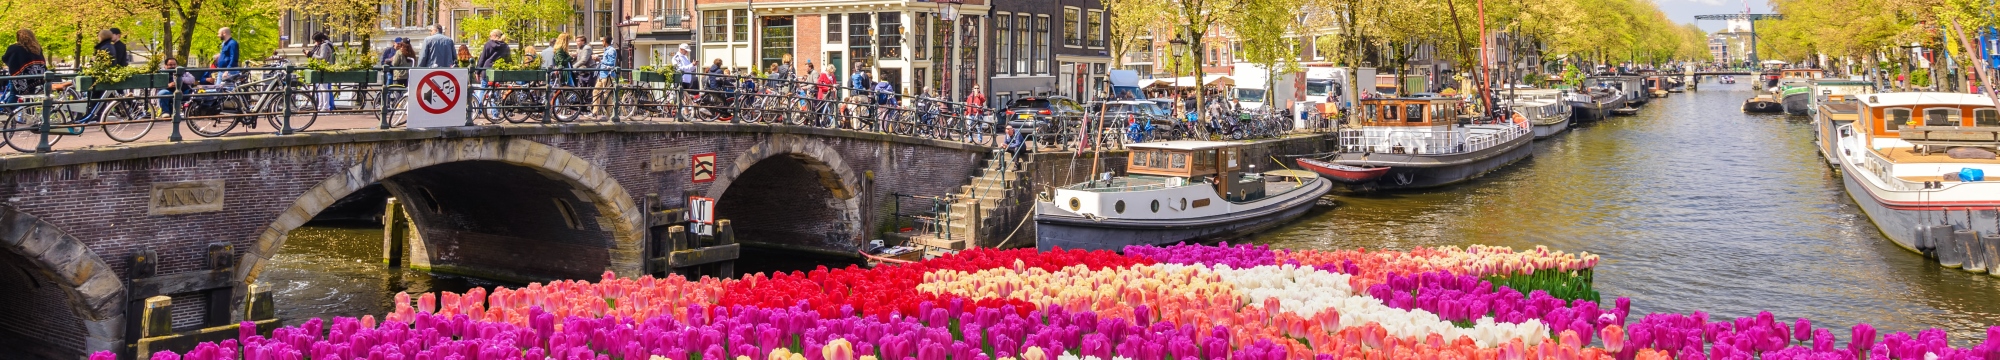 Ámsterdam y los tulipanes